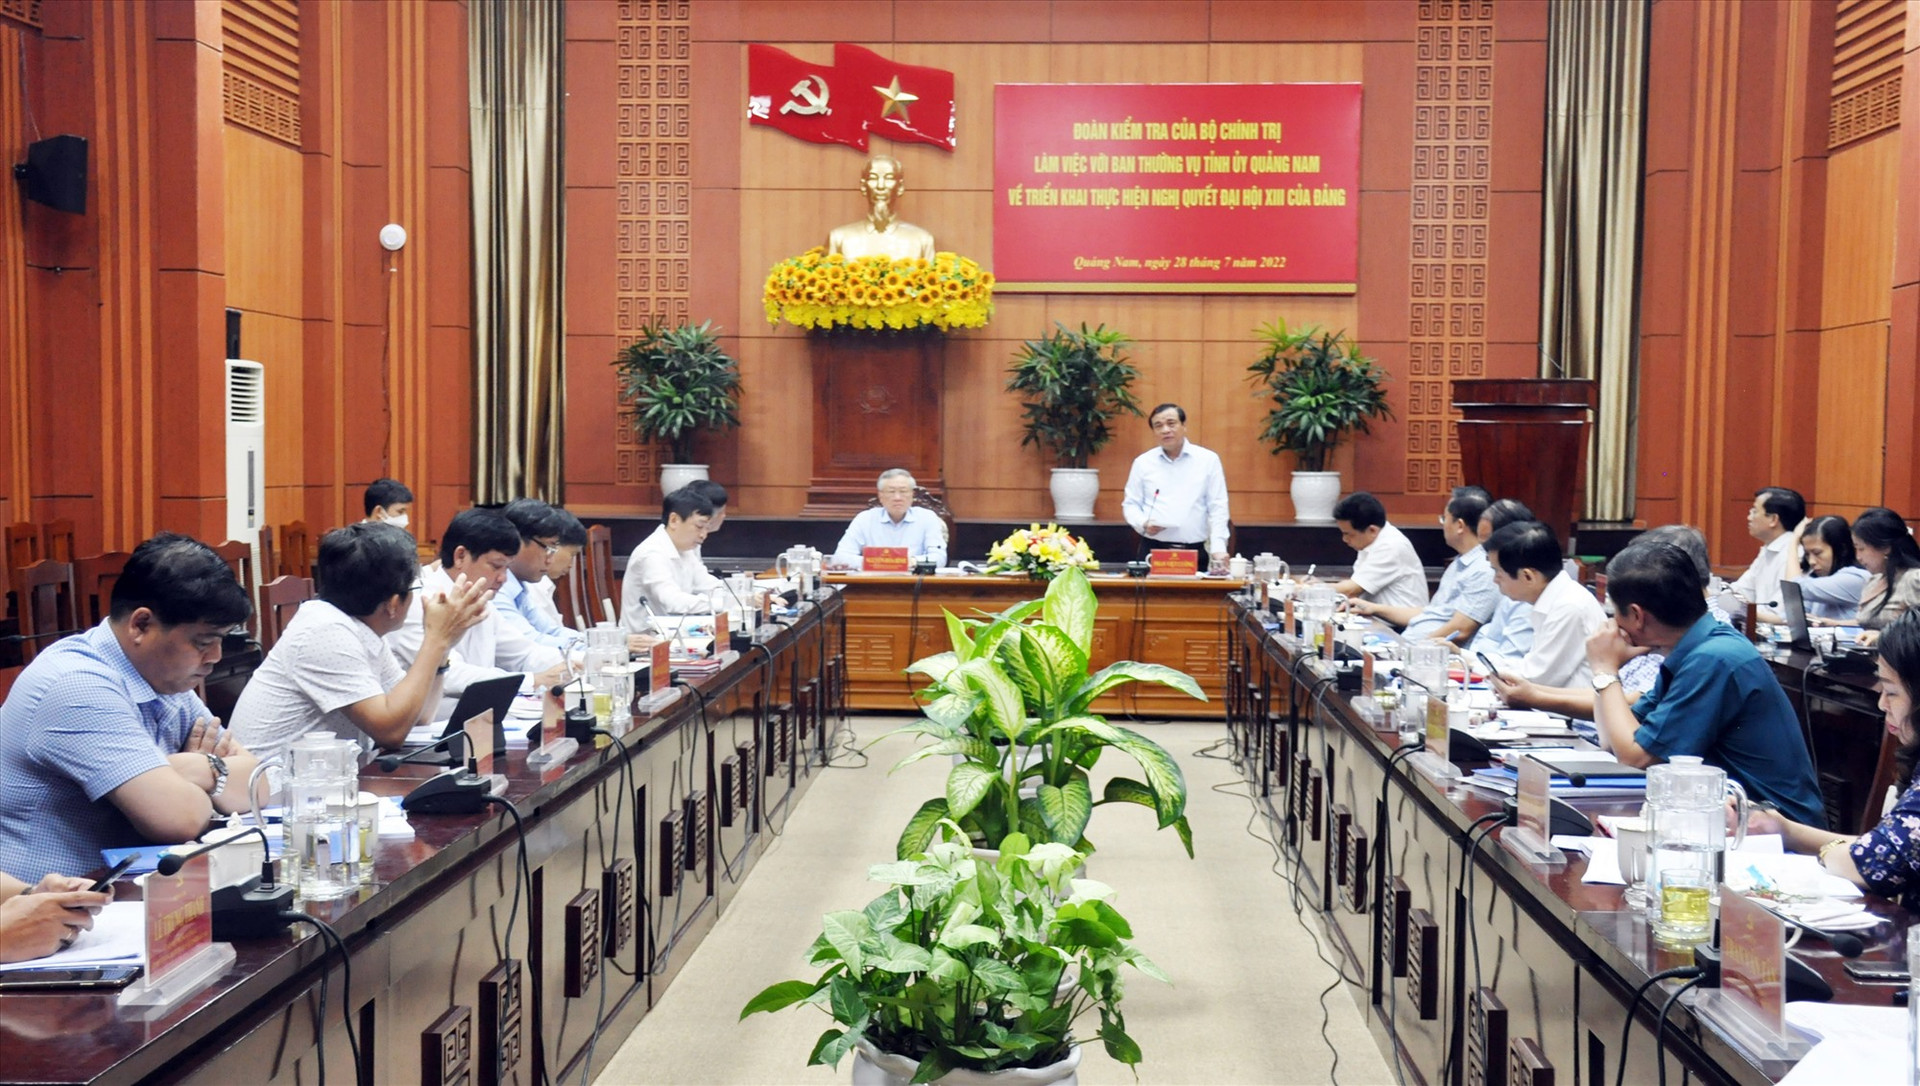 Đoàn Kiểm tra của Bộ Chính trị làm việc với Ban Thường vụ Tỉnh ủy Quảng Nam về thực hiện Nghị quyết Đại hội XIII của Đảng. Ảnh: N.Đ